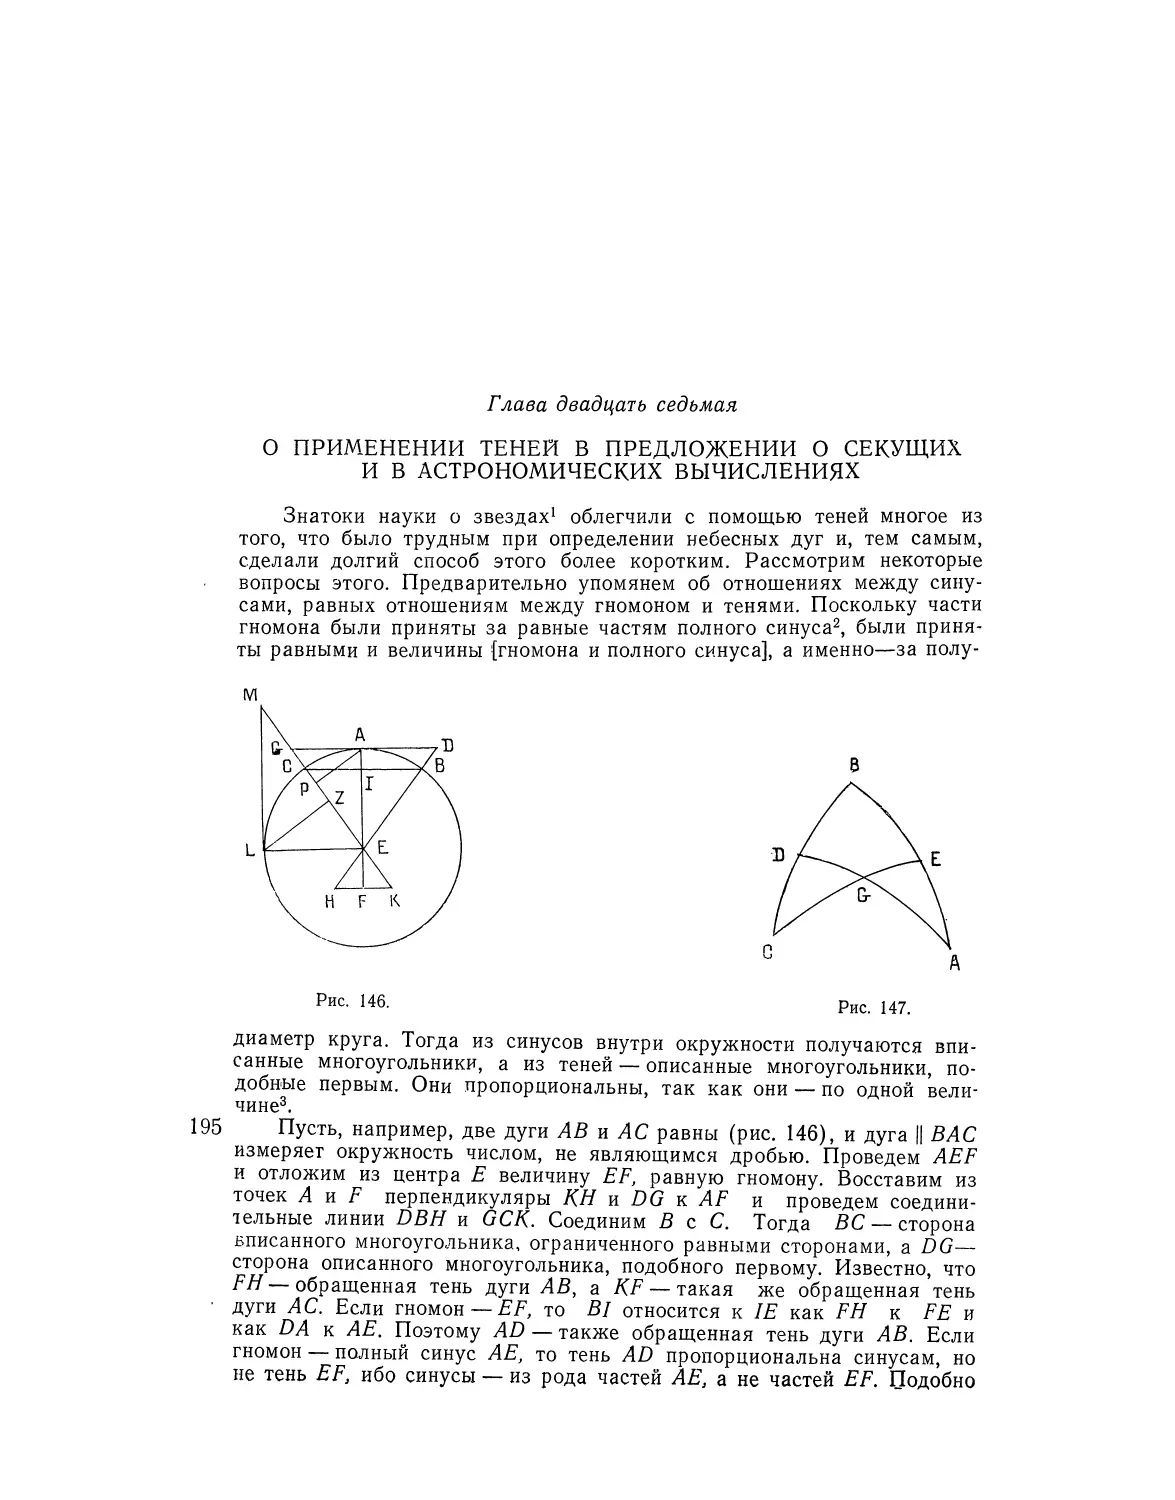 Глава двадцать седьмая, о применении теней в предложении о секущих и в астрономических вычислениях